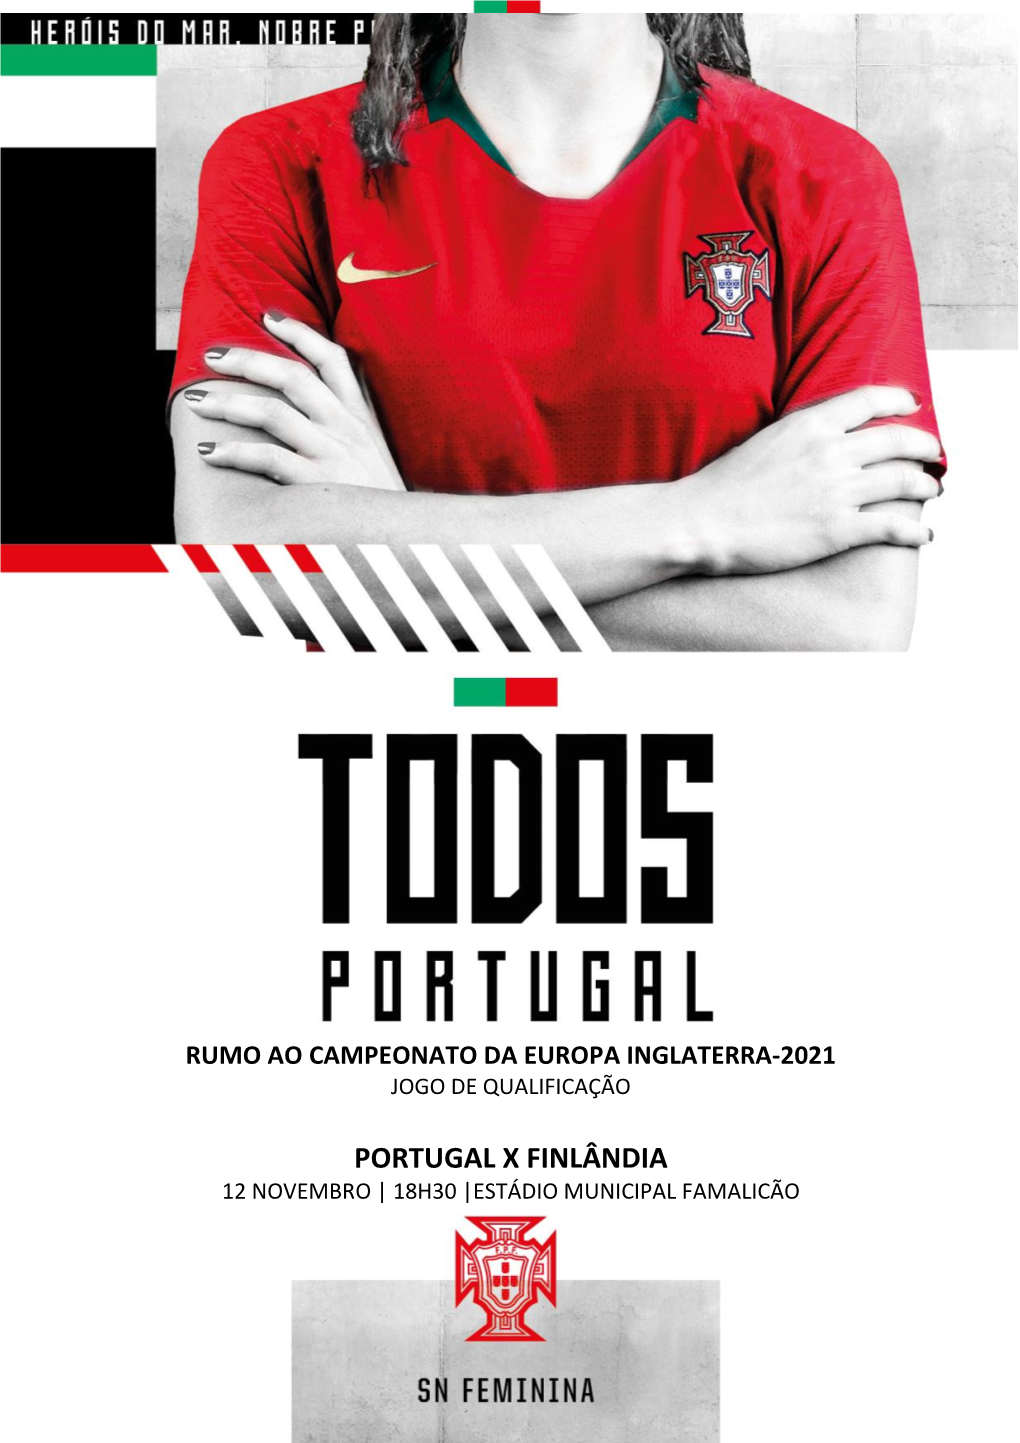 Portugal X Finlândia 12 Novembro | 18H30 |Estádio Municipal Famalicão